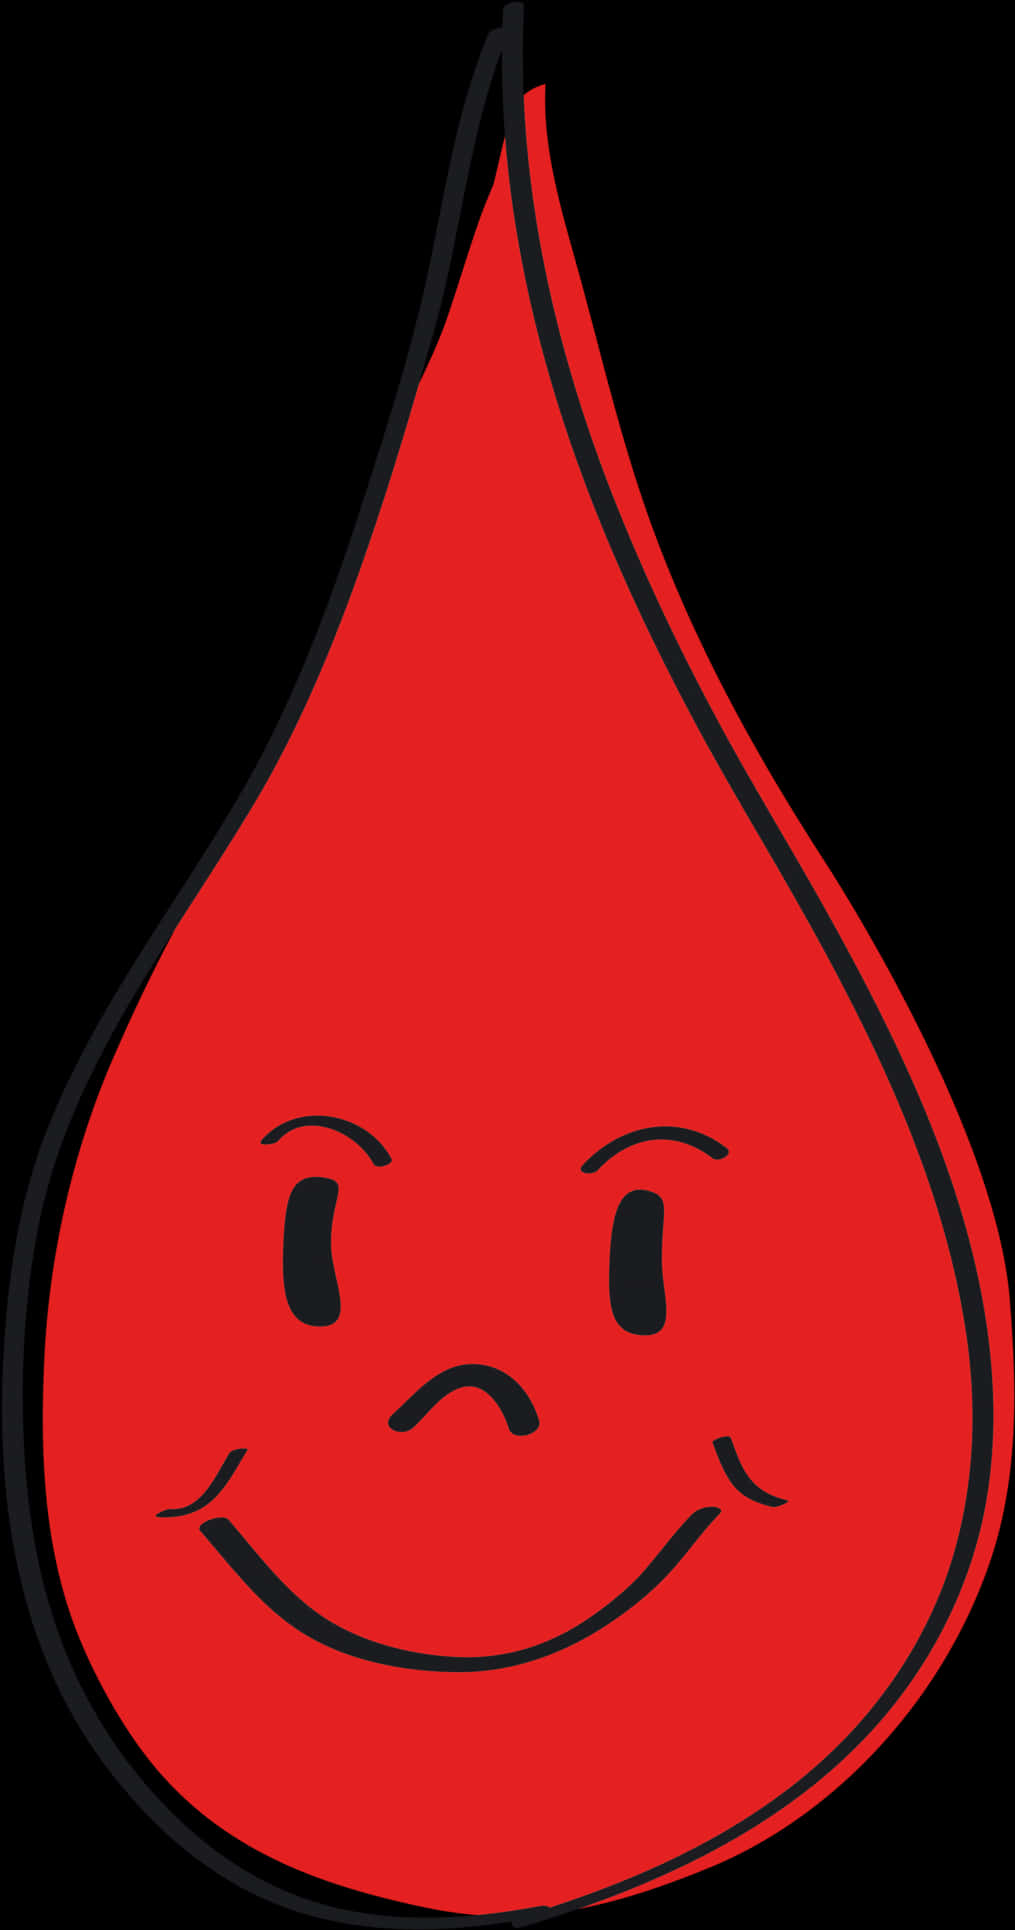 Smiling Blood Drop Cartoon